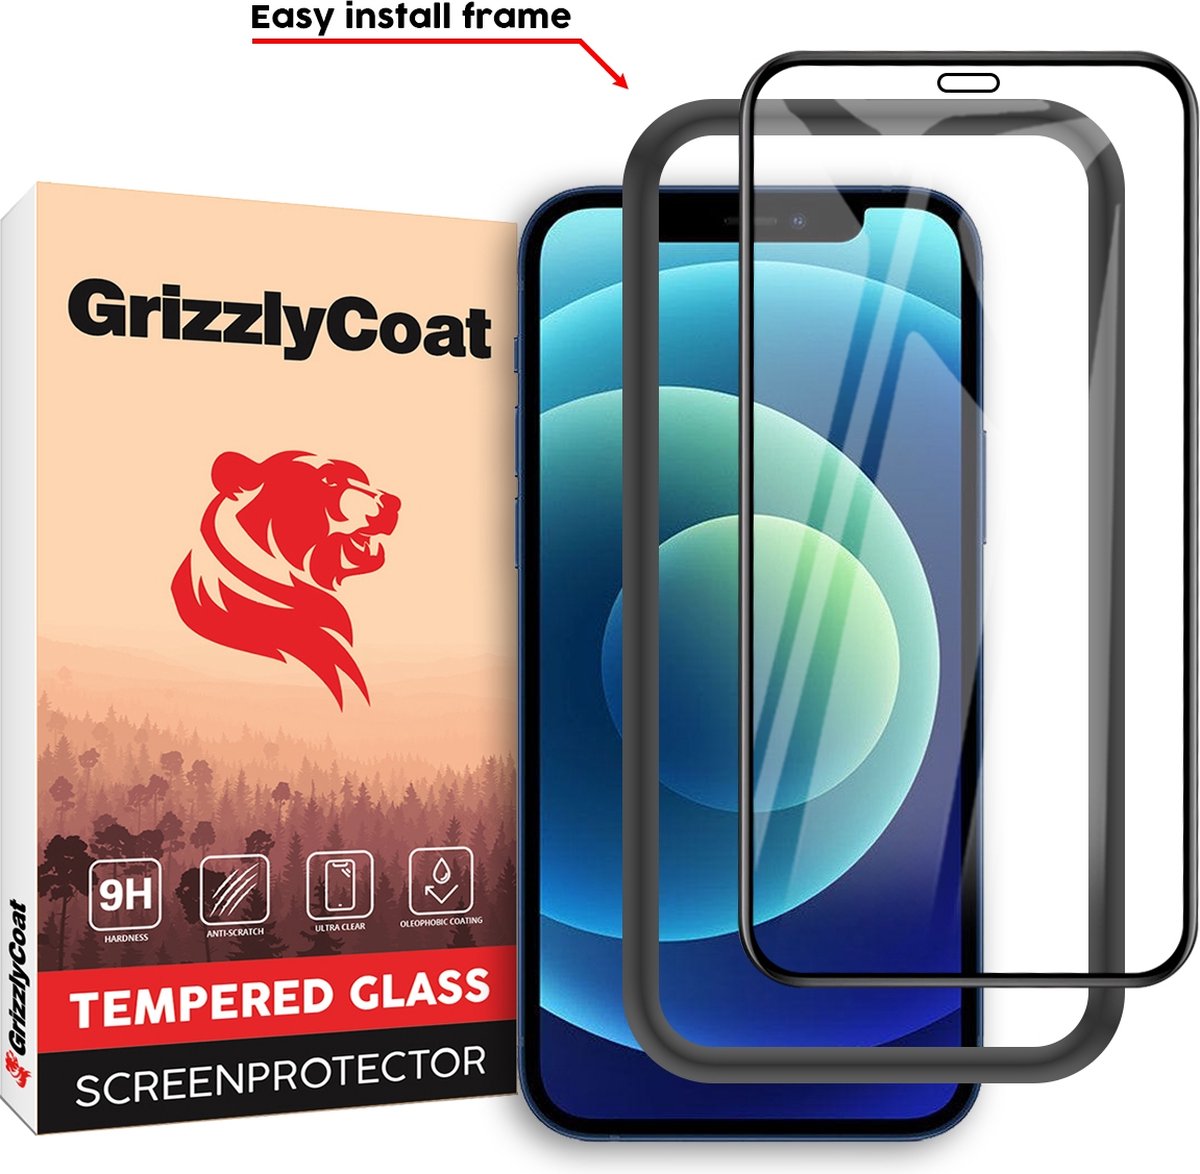 GrizzlyCoat Easy Fit - Screenprotector geschikt voor Apple iPhone 12 Pro Glazen Screenprotector - Case Friendly + Installatie Frame - Zwart